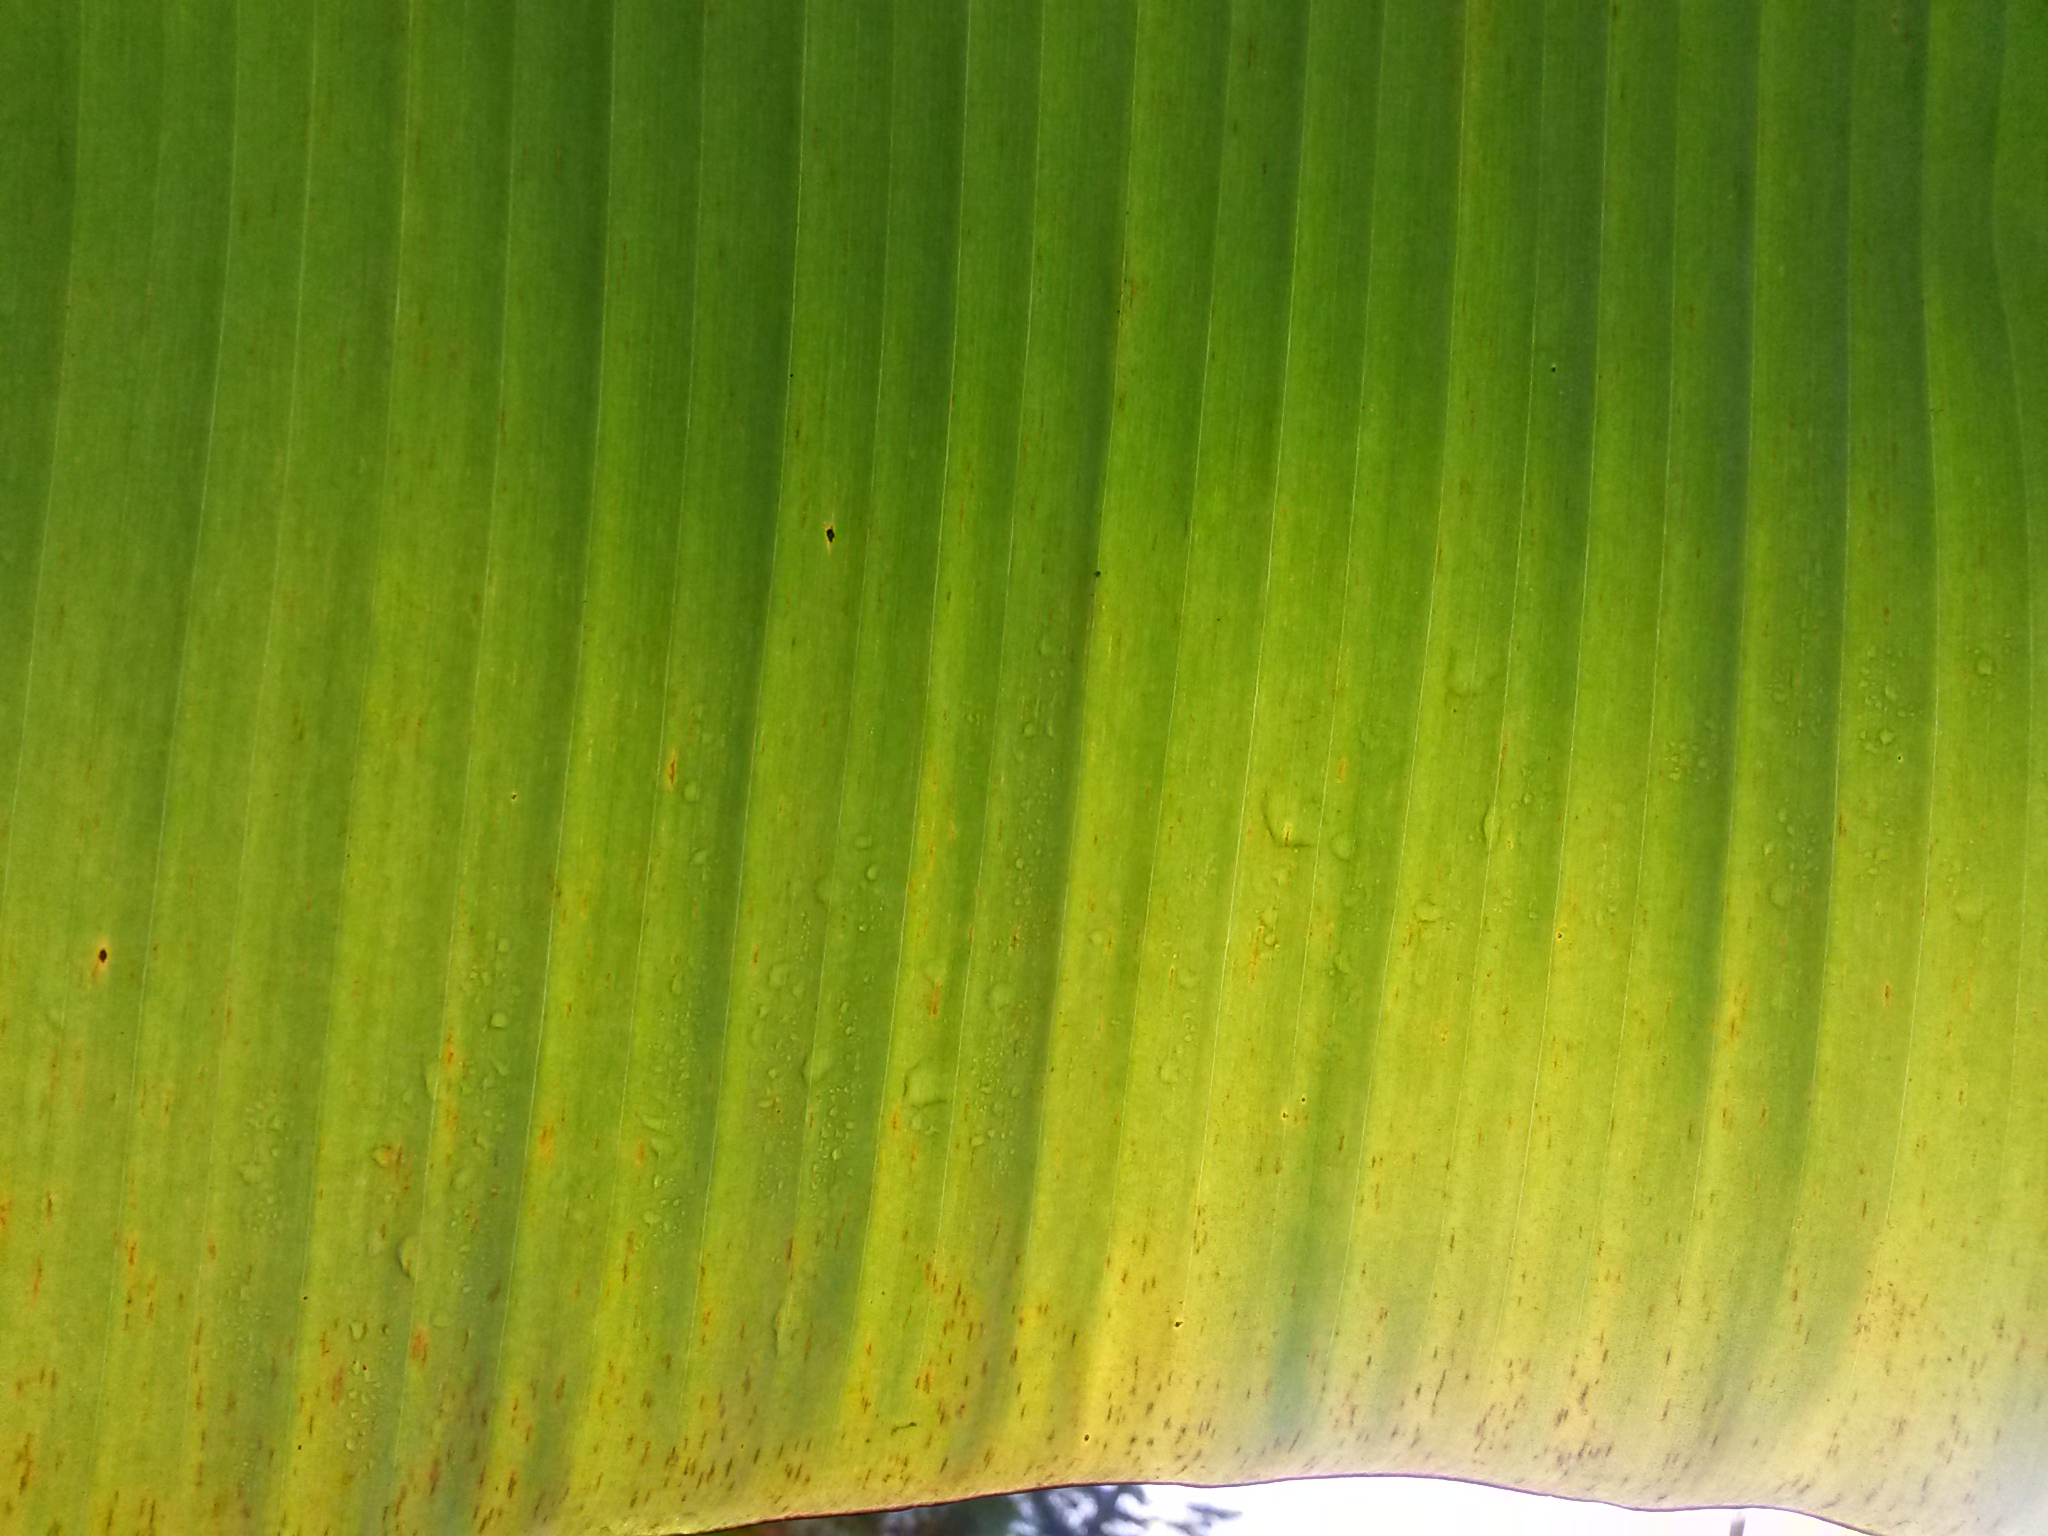 <p><b><p>Estrias de coloração marrom na face inferior da folha.</p></b></p><p>Autor: Josiane T. Ferrari</p>